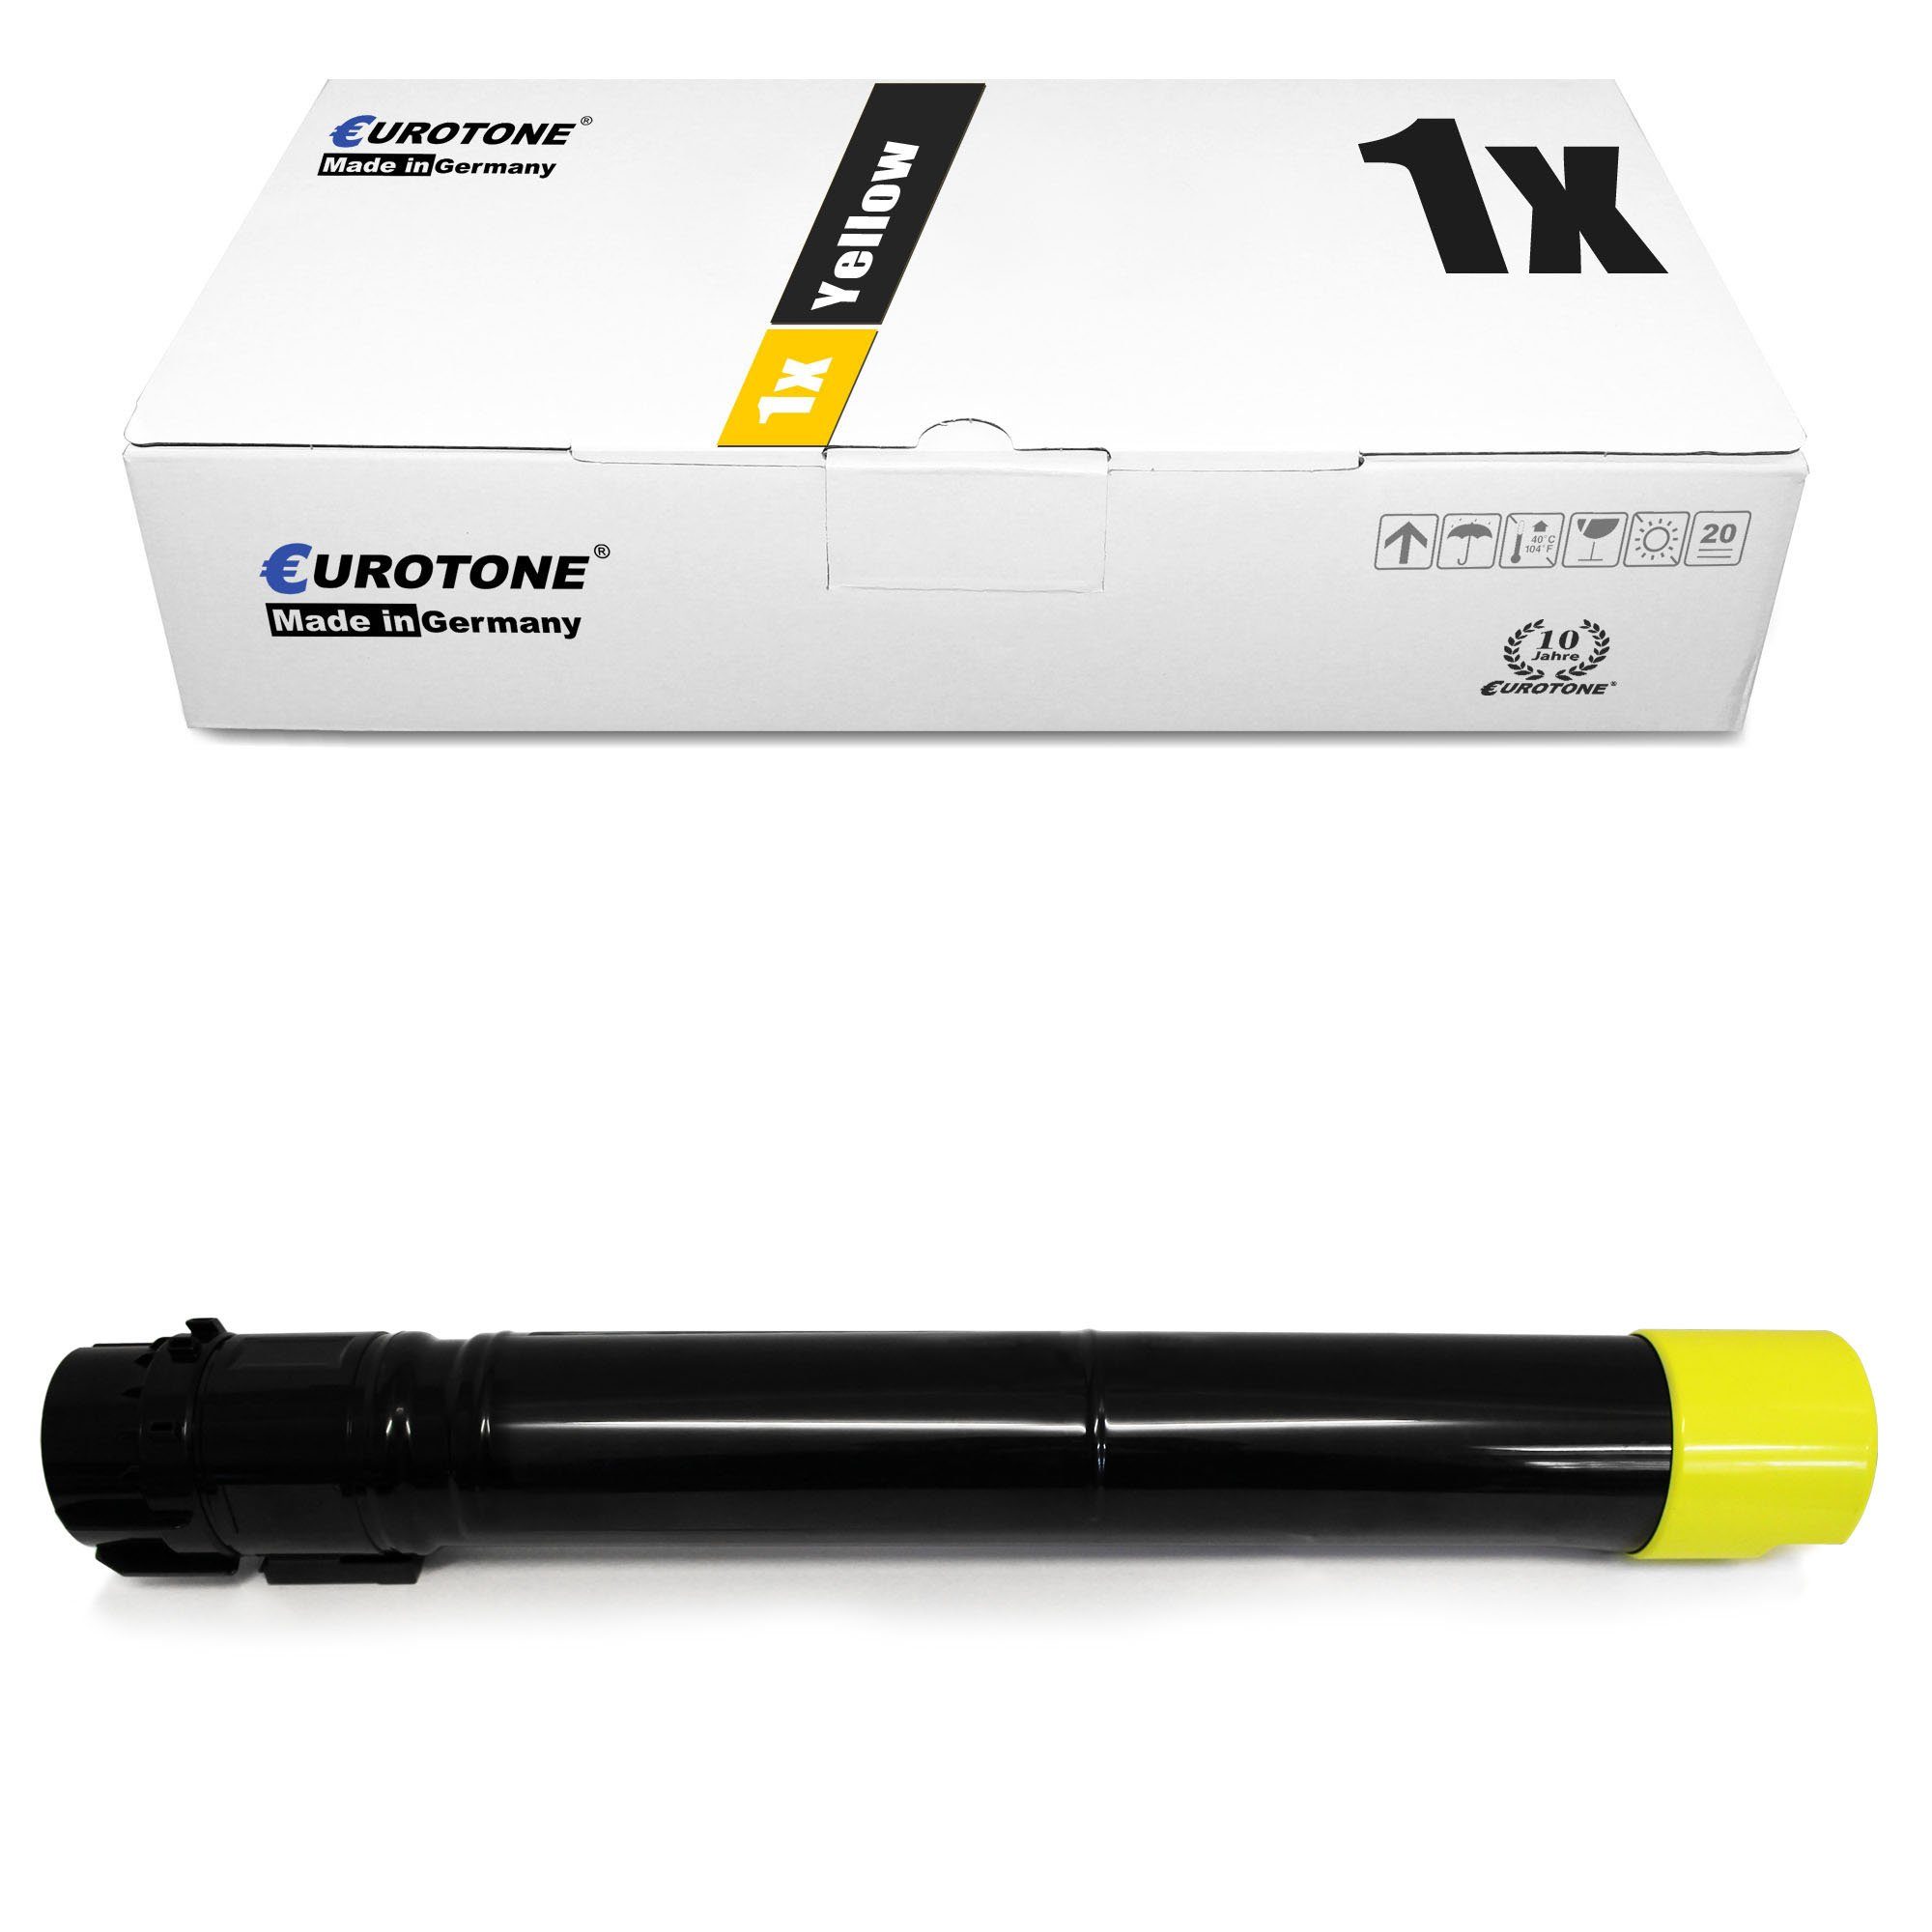 Toner Yellow 106R1438 Eurotone Tonerkartusche ersetzt Xerox